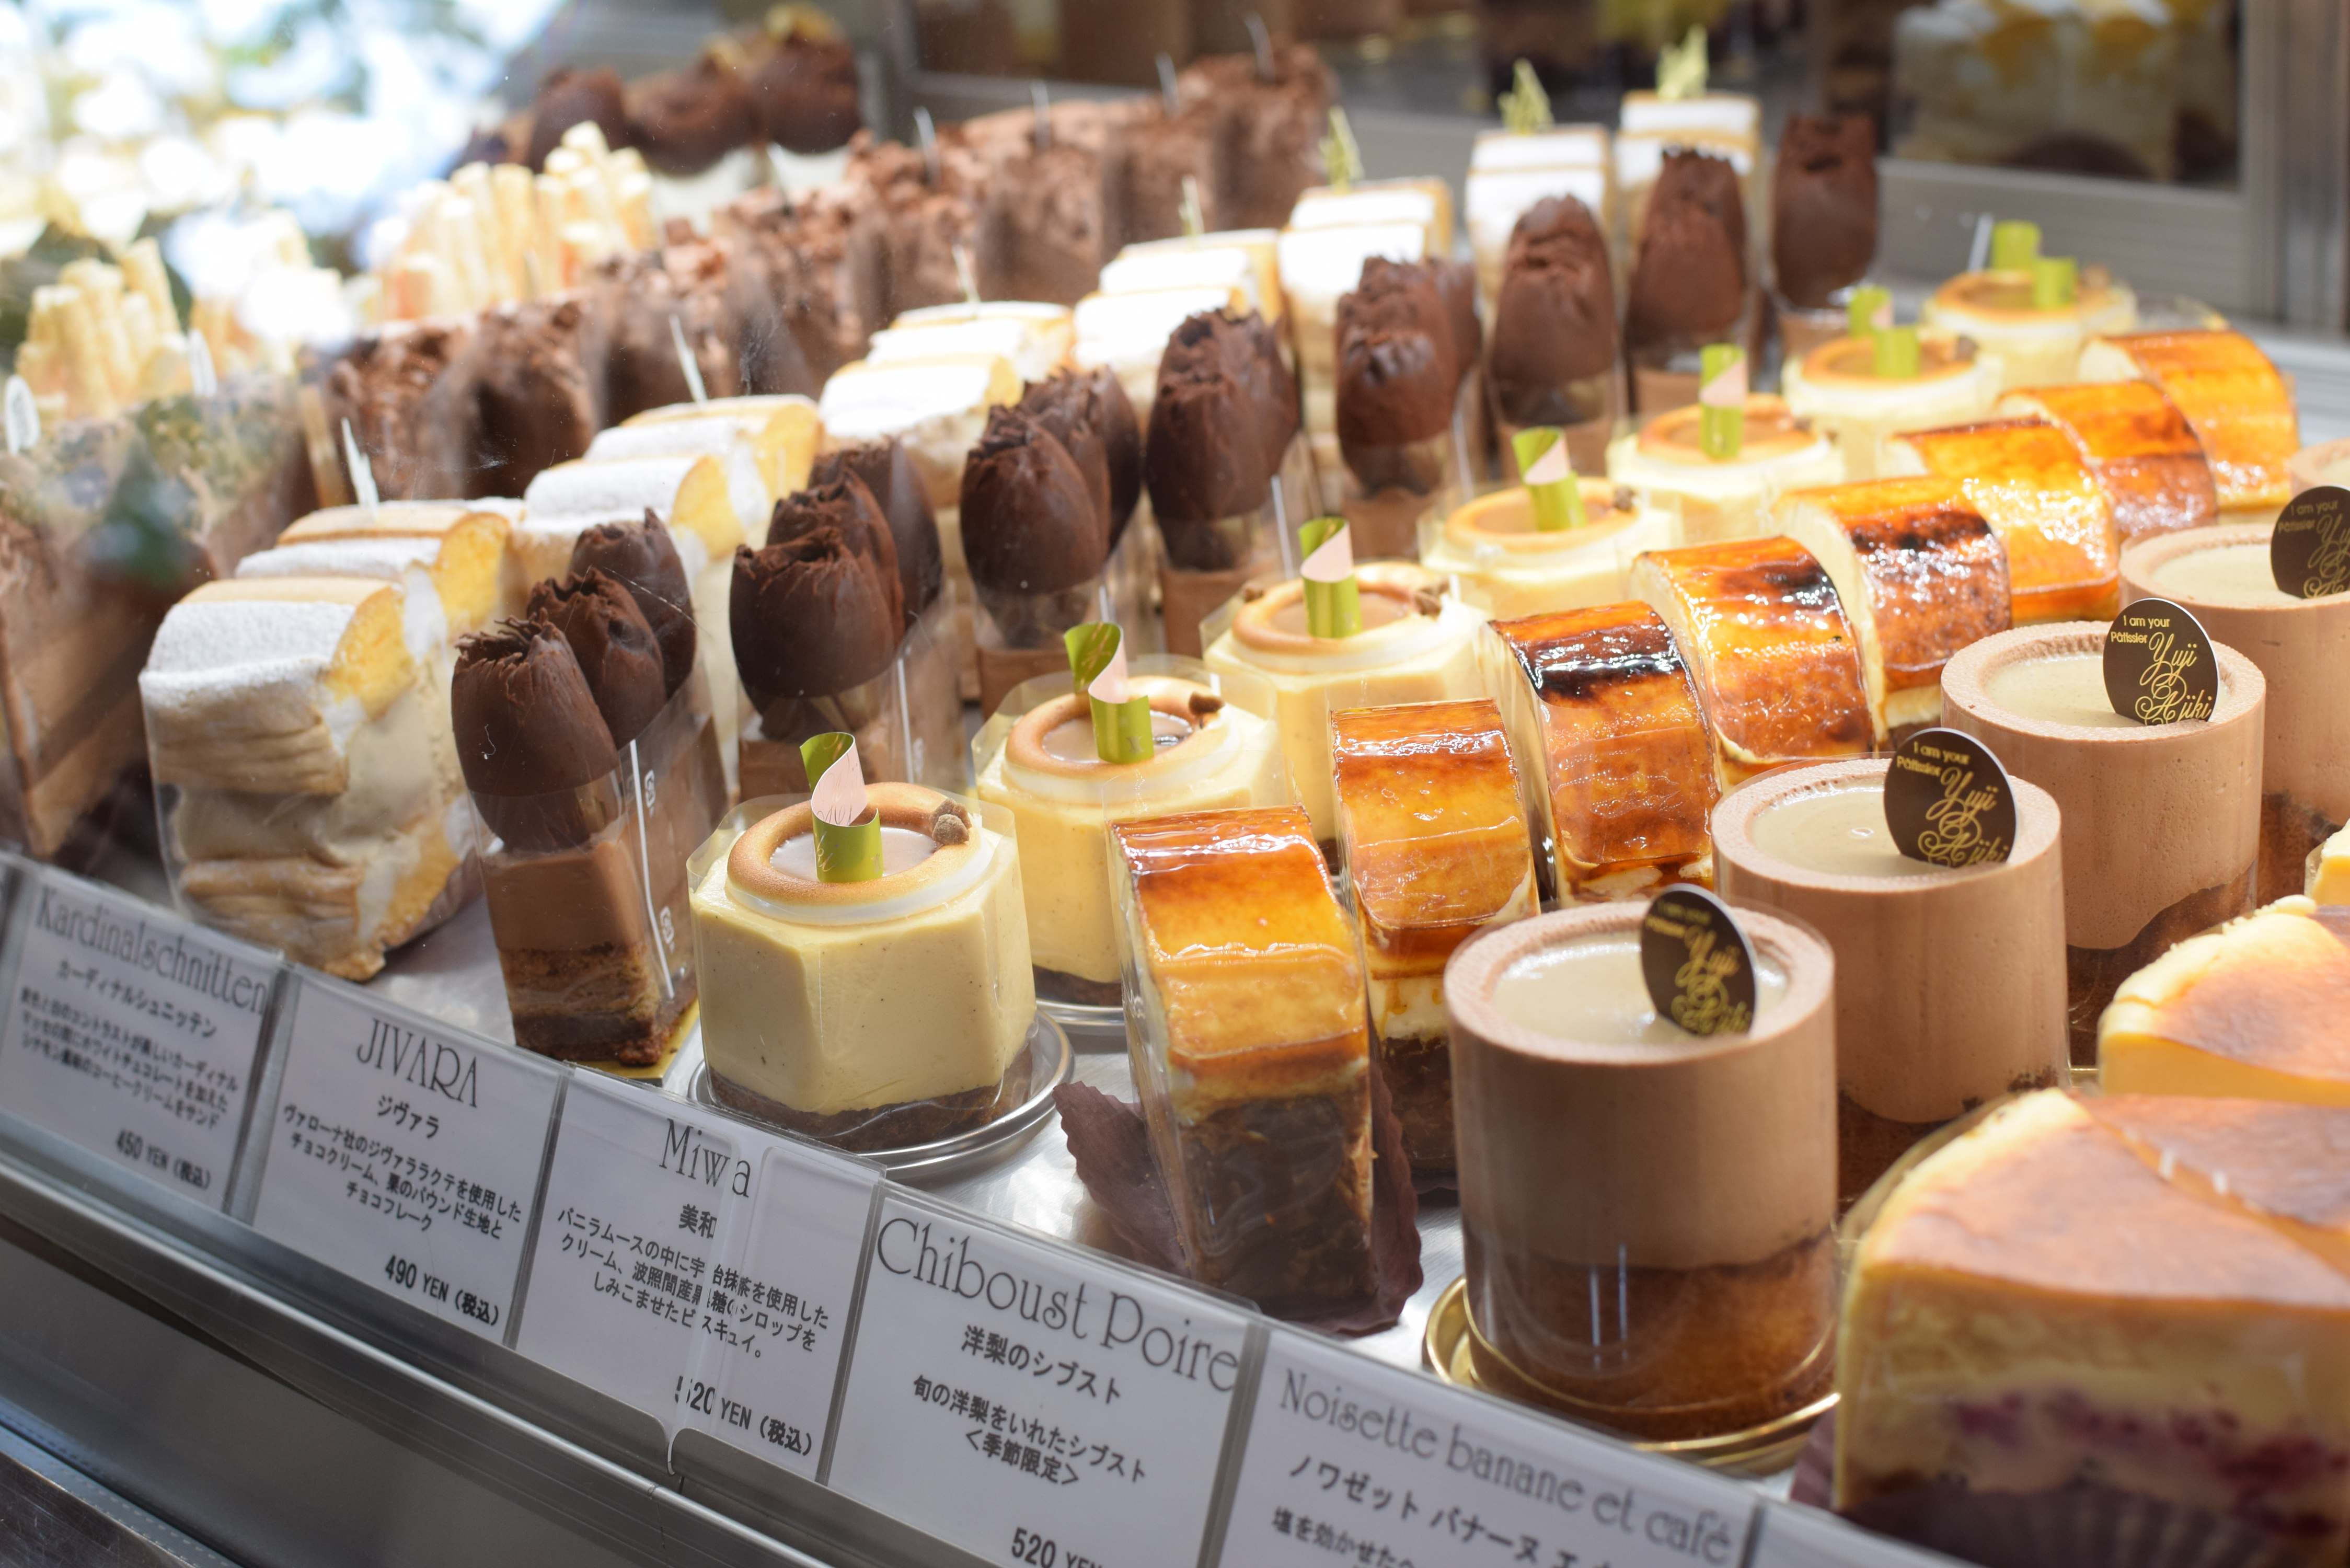 ユウジアジキ は食べログランキング全国1位 横浜都筑区のケーキの名店 年10月にはオンラインショップもオープンし通販可能に Bunten 横浜の地域情報